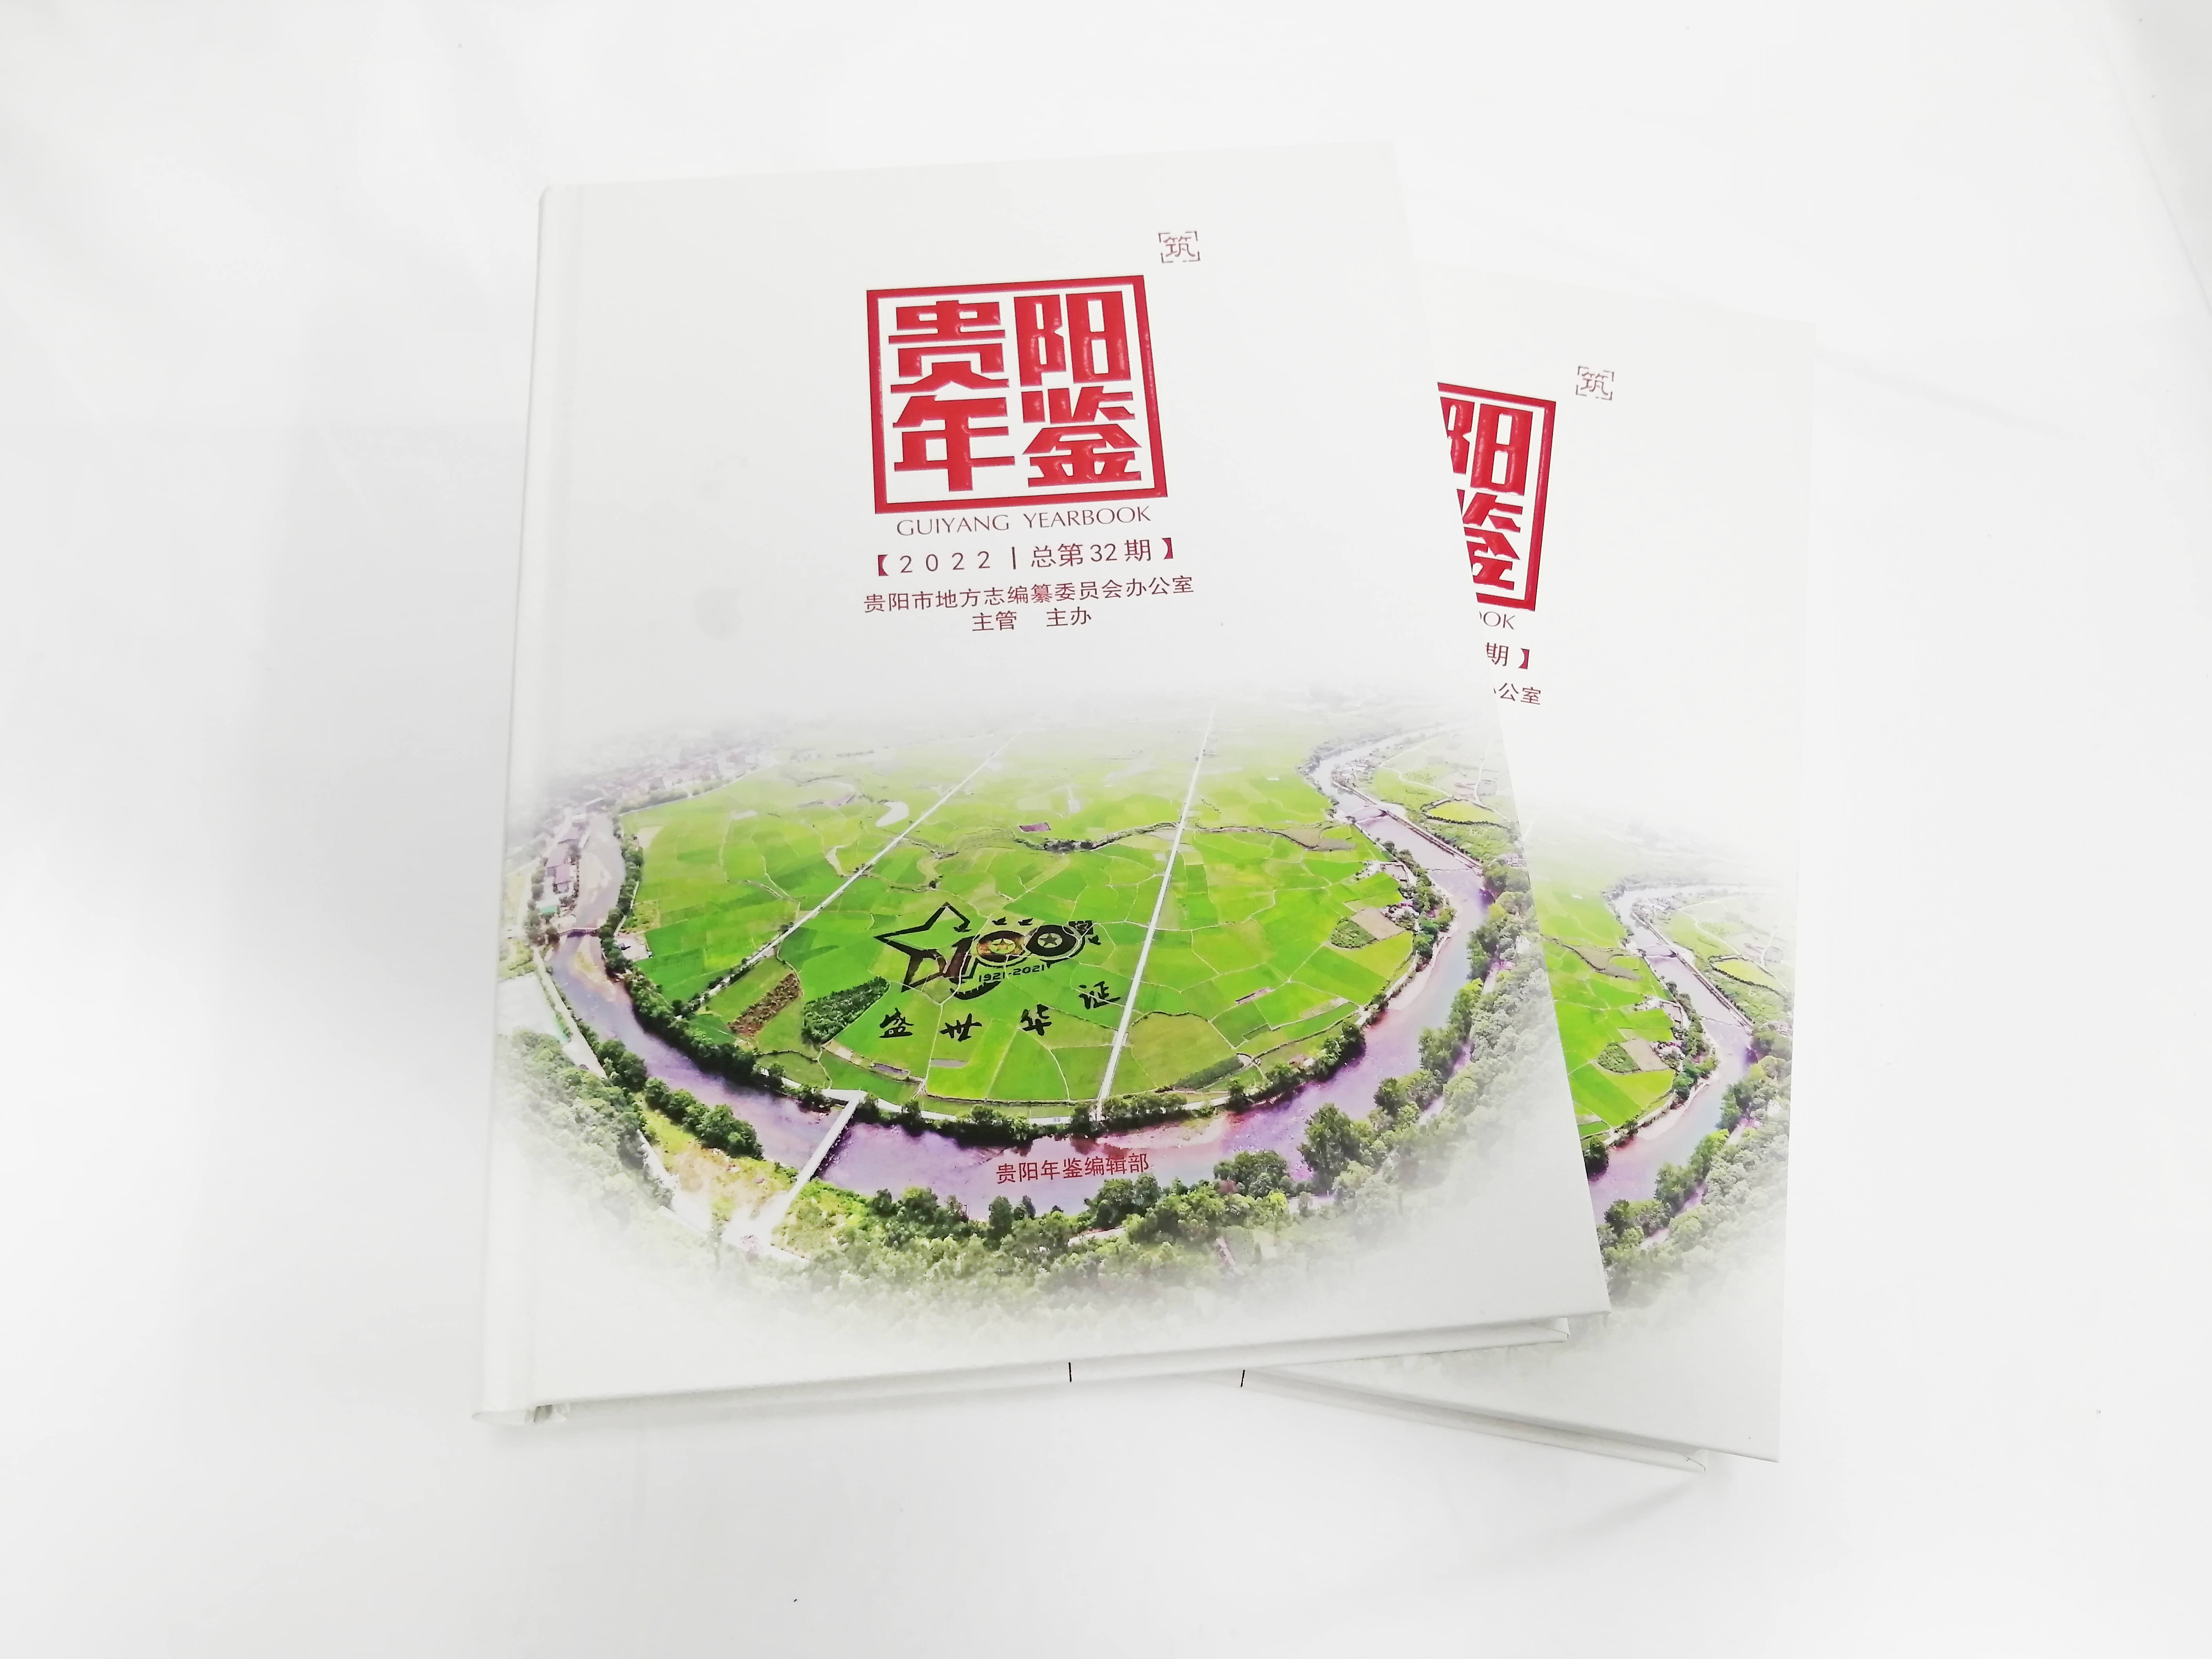 近期《贵阳年鉴2022》由深圳金丽彩印刷有限公司成功印制